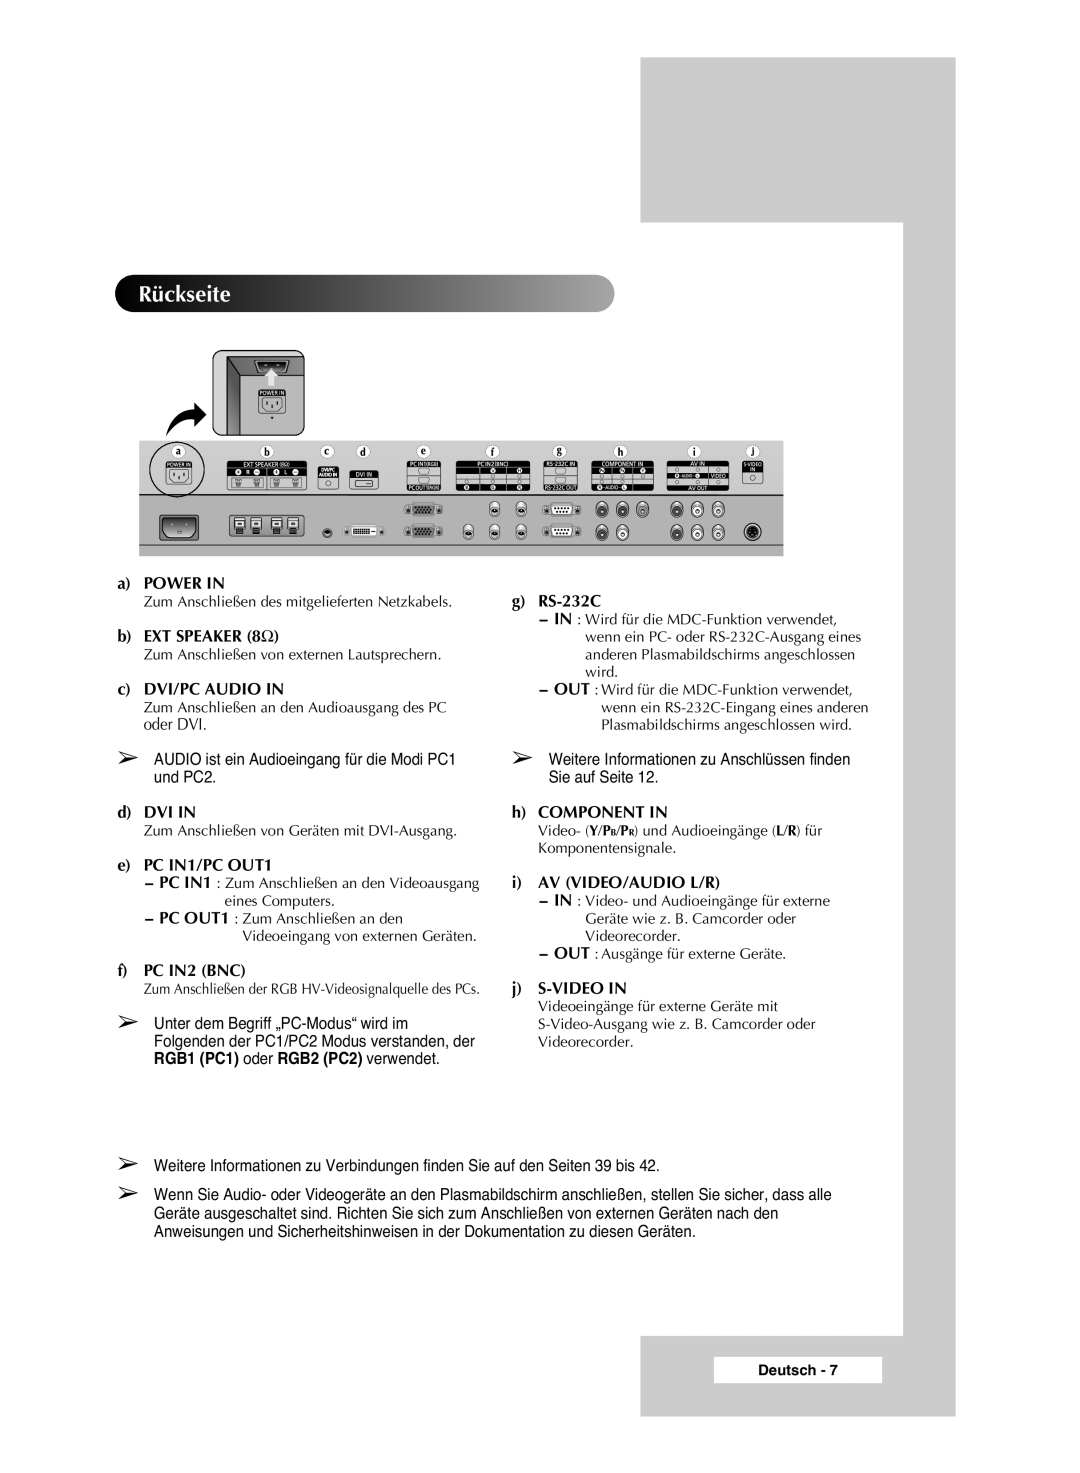 Samsung PPM42M6SSX/EDC manual Rückseite, Audio ist ein Audioeingang für die Modi PC1 und PC2 